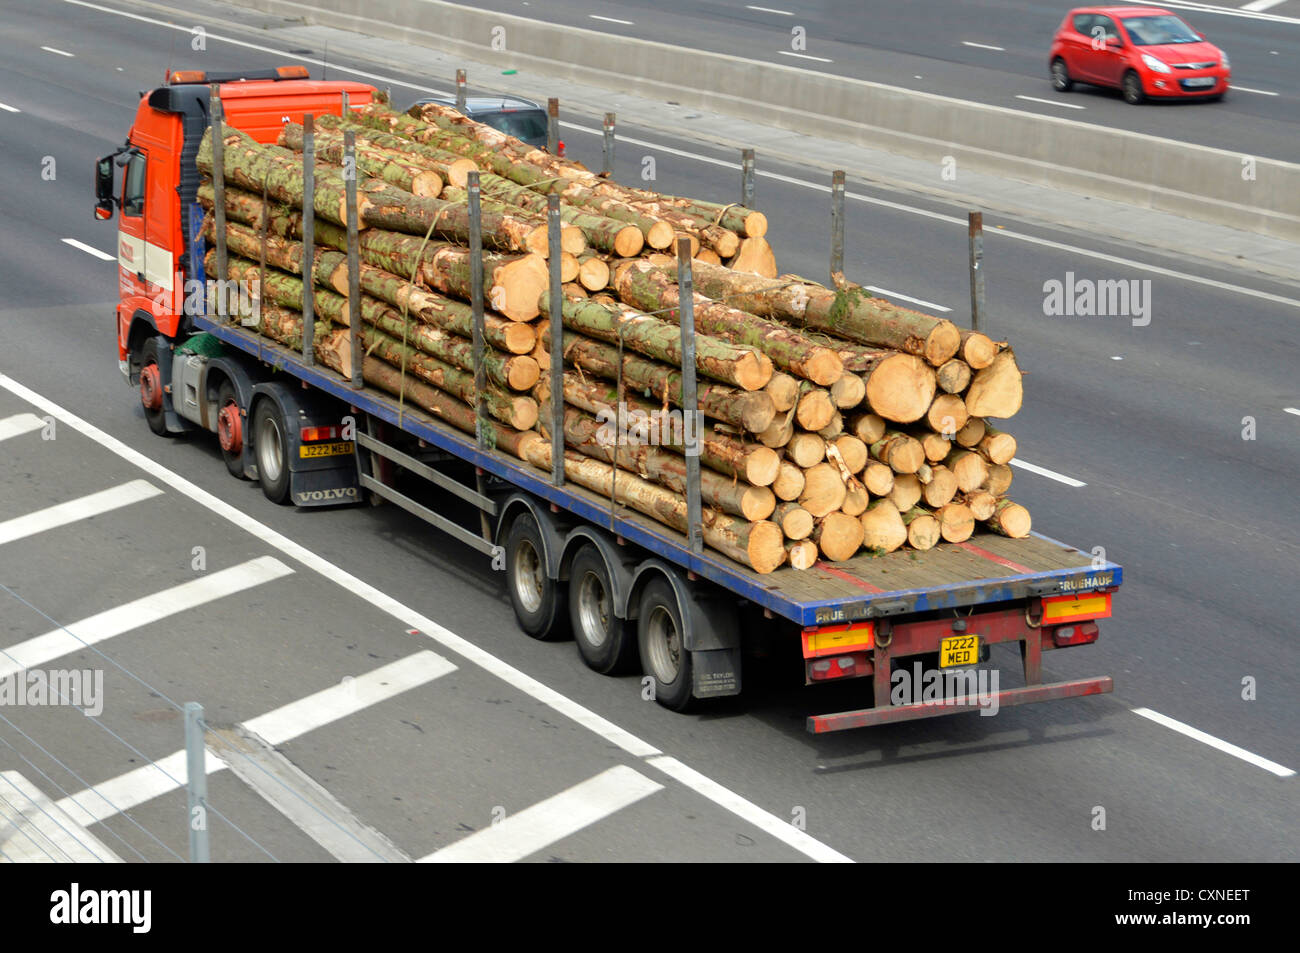 Seite & Rückseite Ansicht des Speditionsgeschäfts lkw-LKW-LKW mit  Sattelflachliegewagen Ladung Schnittlängen von Baumstamm-Holzstämmen auf  der britischen Autobahn Stockfotografie - Alamy